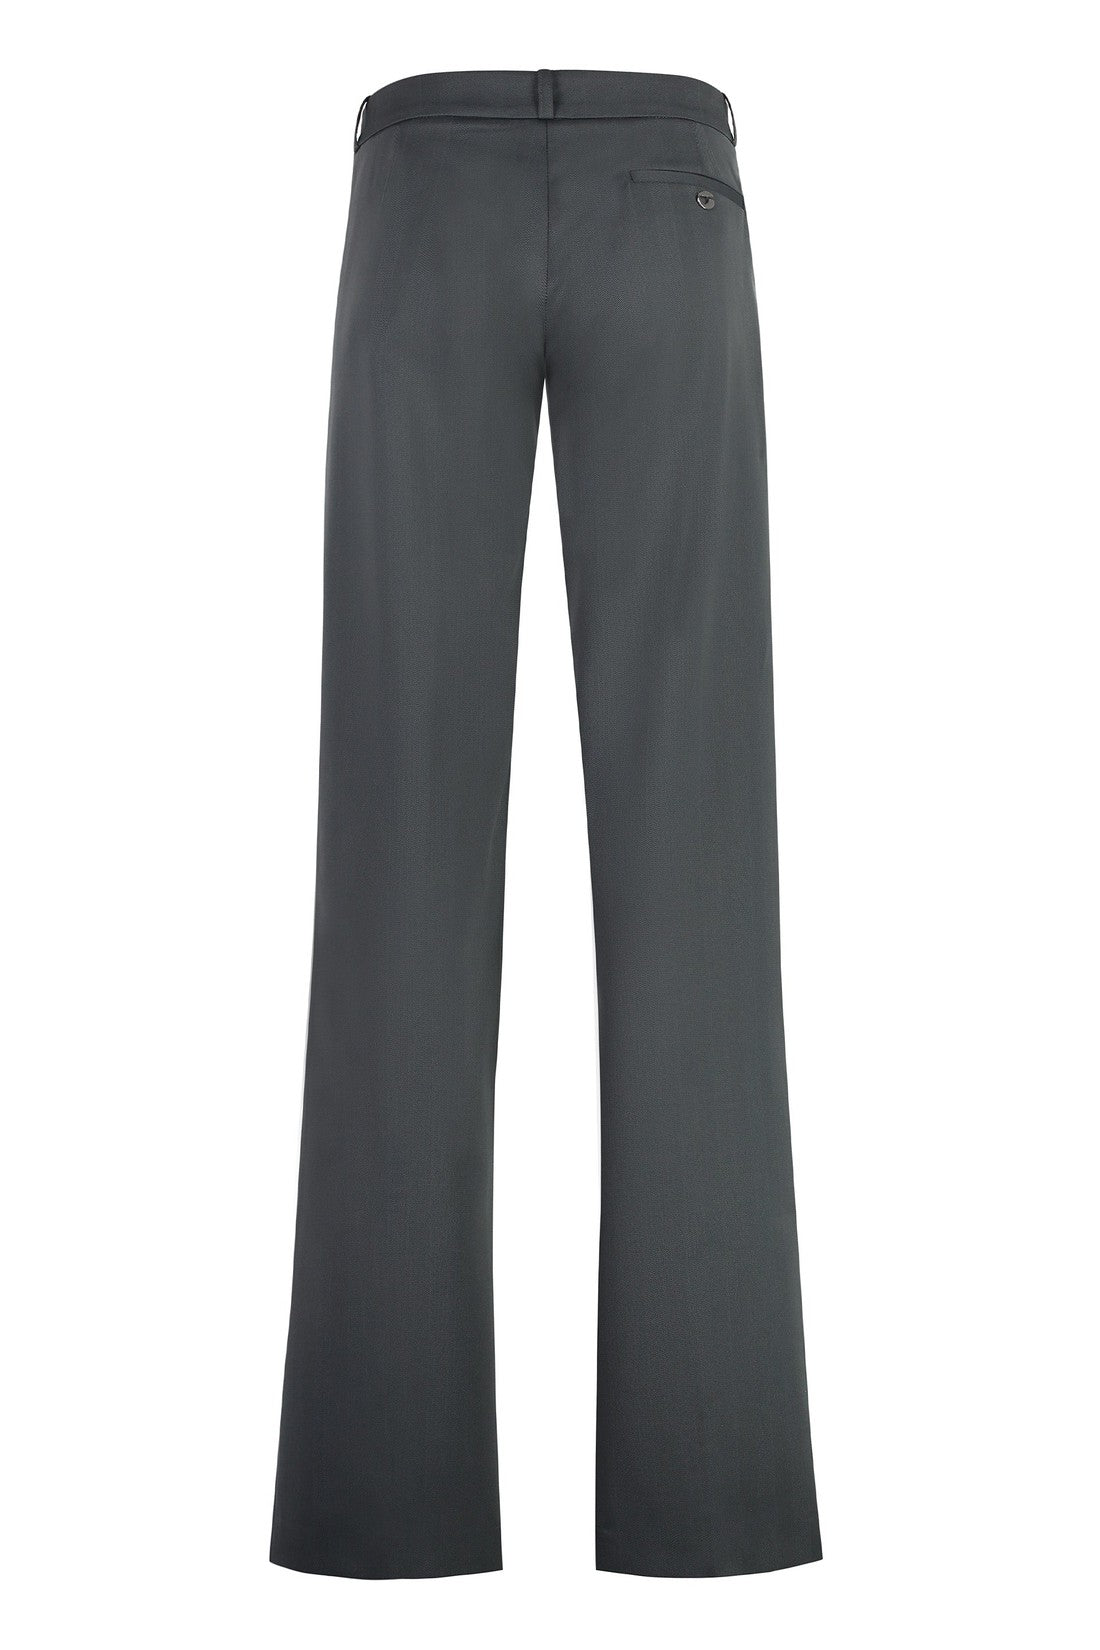 Coperni-OUTLET-SALE-Tailored trousers-ARCHIVIST